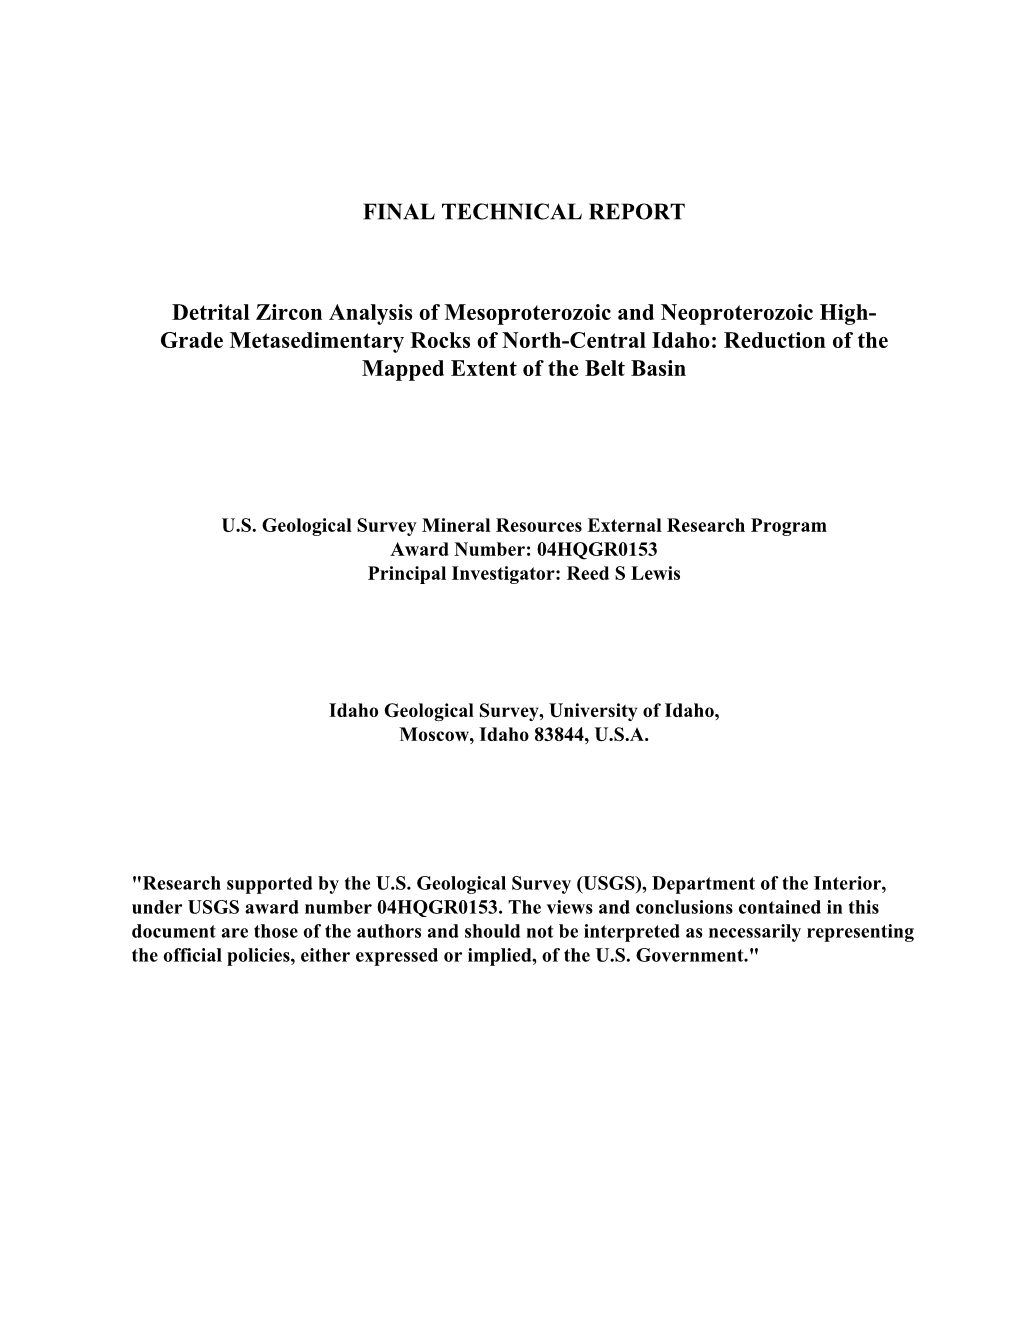 USGS MRERP HQGR0153 Final Technical Report